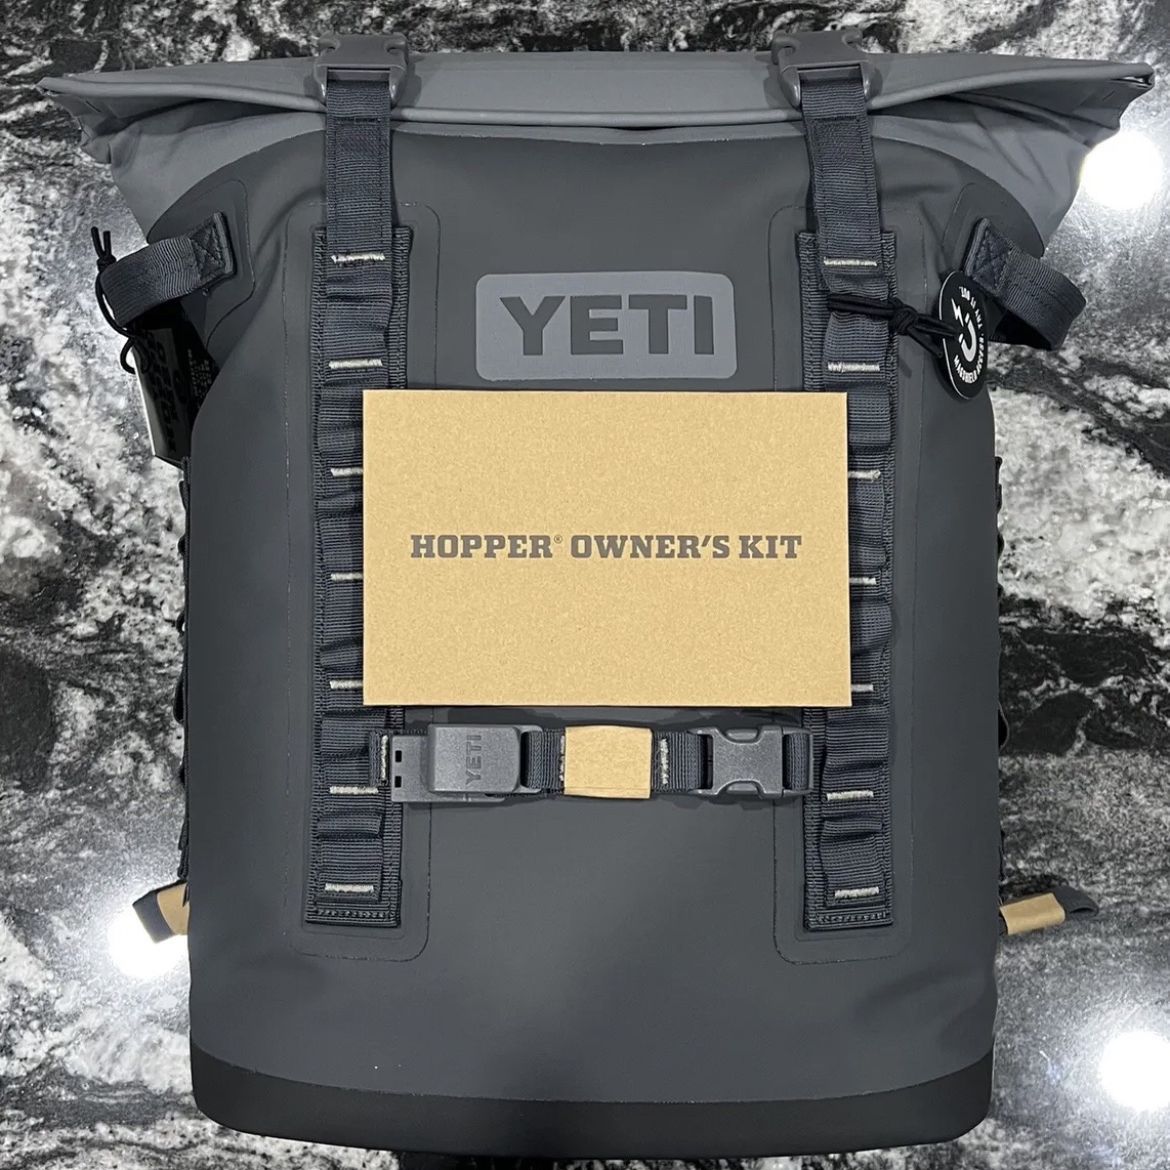 Yeti Hopper Backpack M20 Charcoal - The Hardwear Company